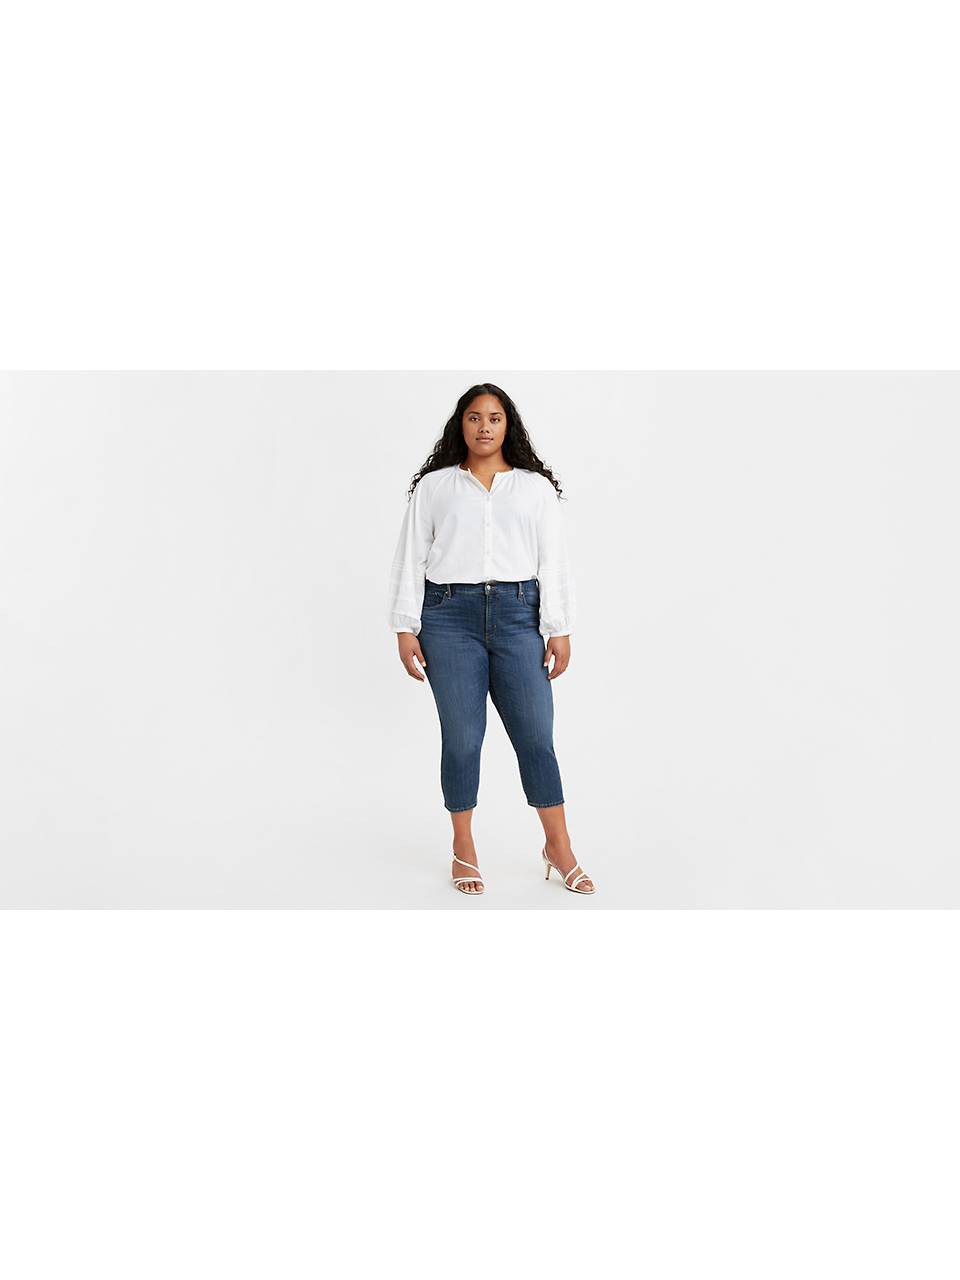 Plus Size Shorts Women | Levi's® US